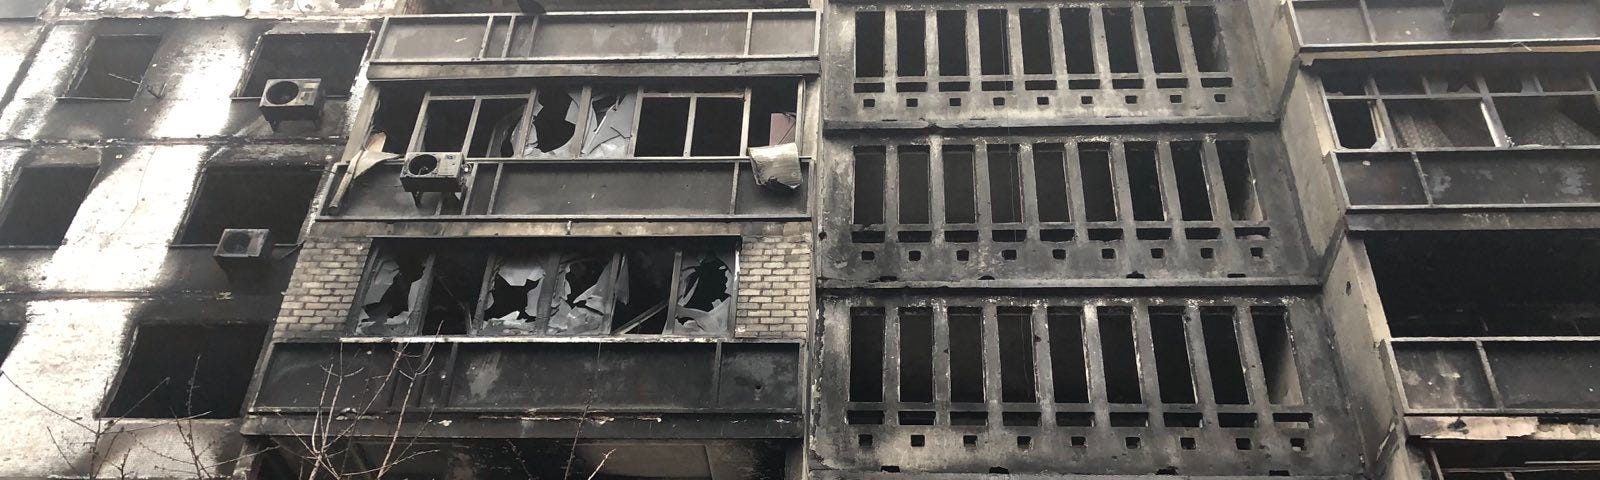 A destroyed building in Kharkiv, Ukraine